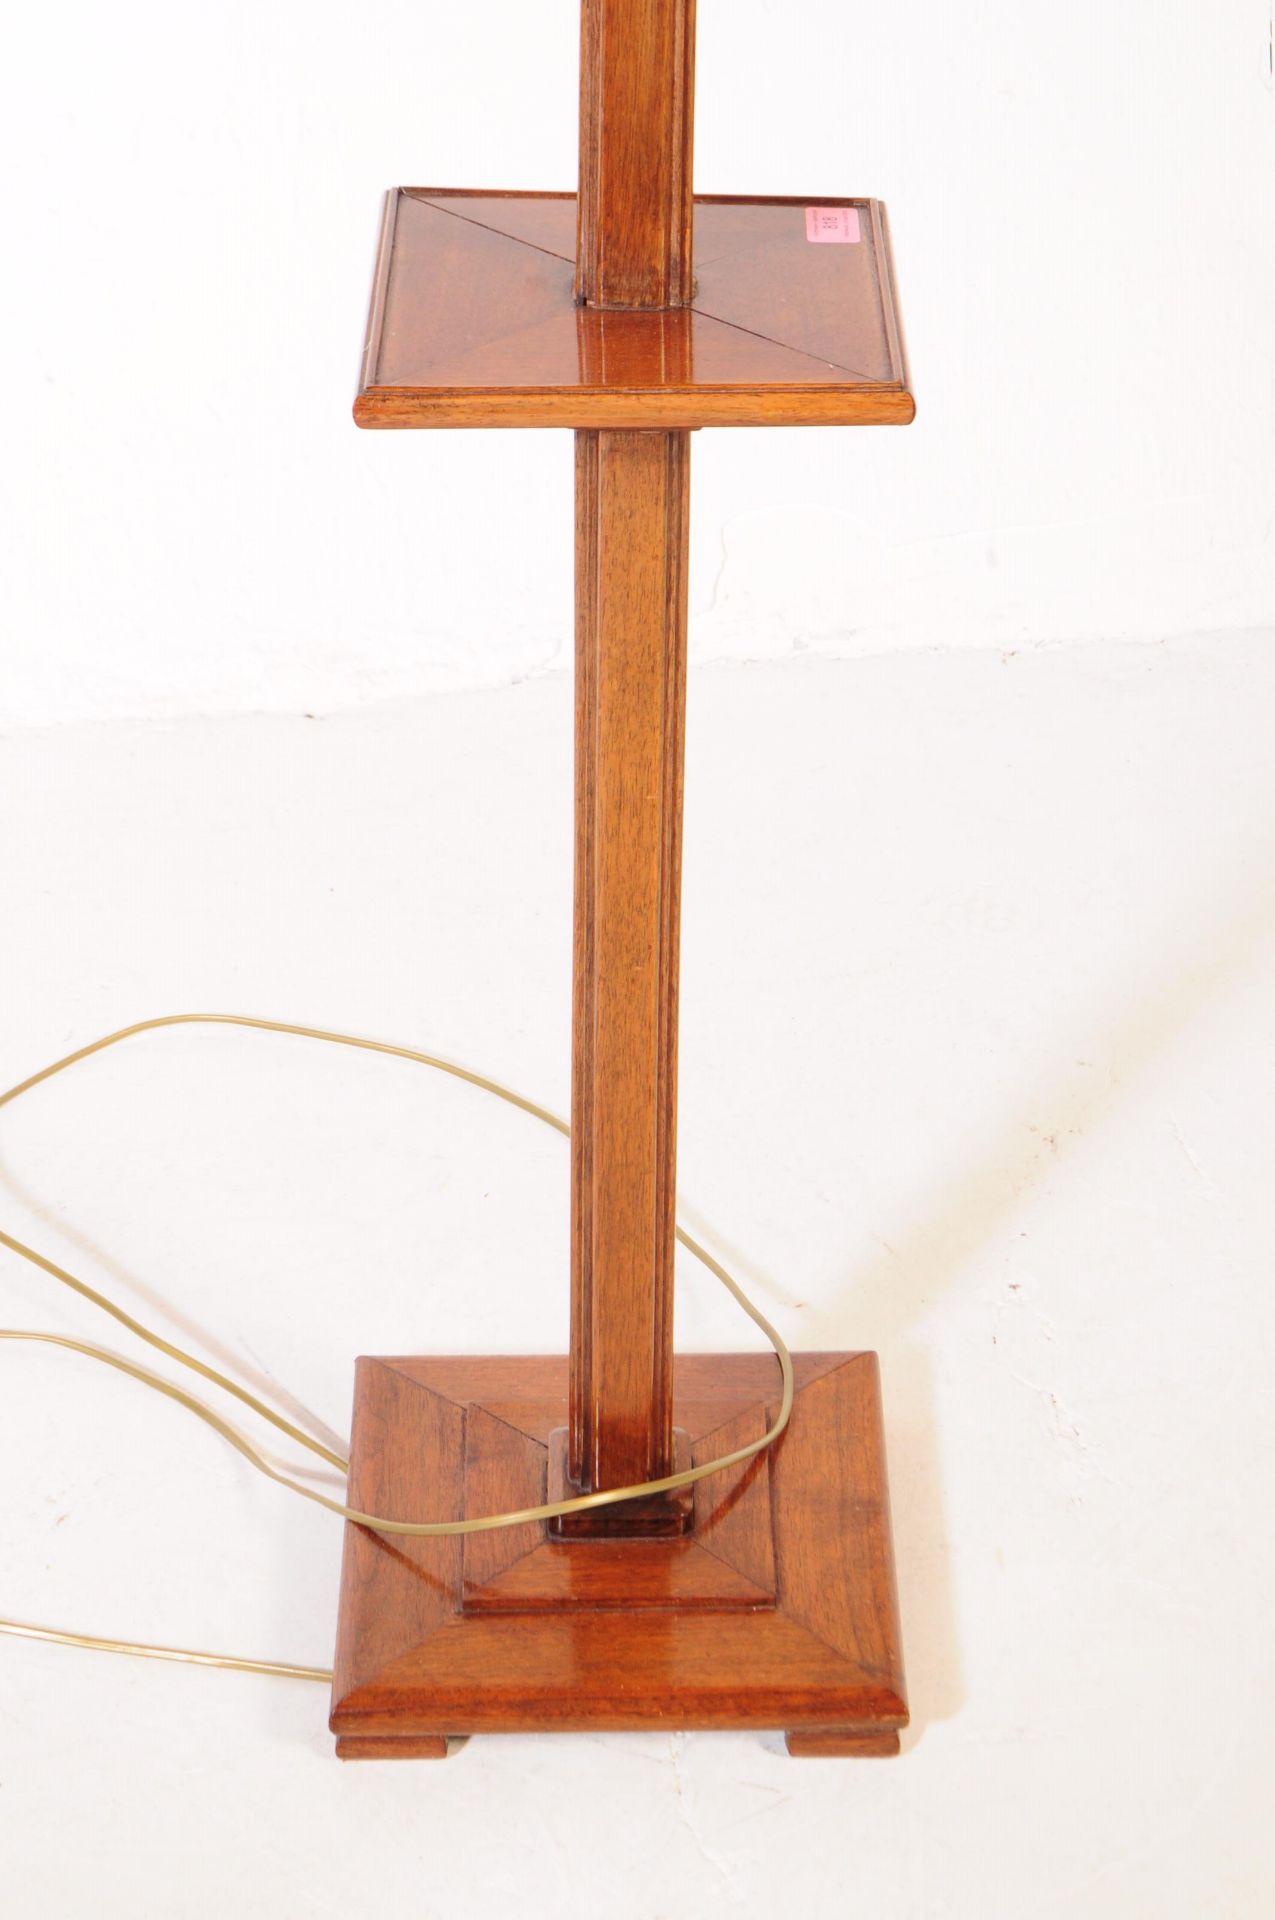 1930S ART DECO OAK FLOOR STANDING LAMP - Image 2 of 3